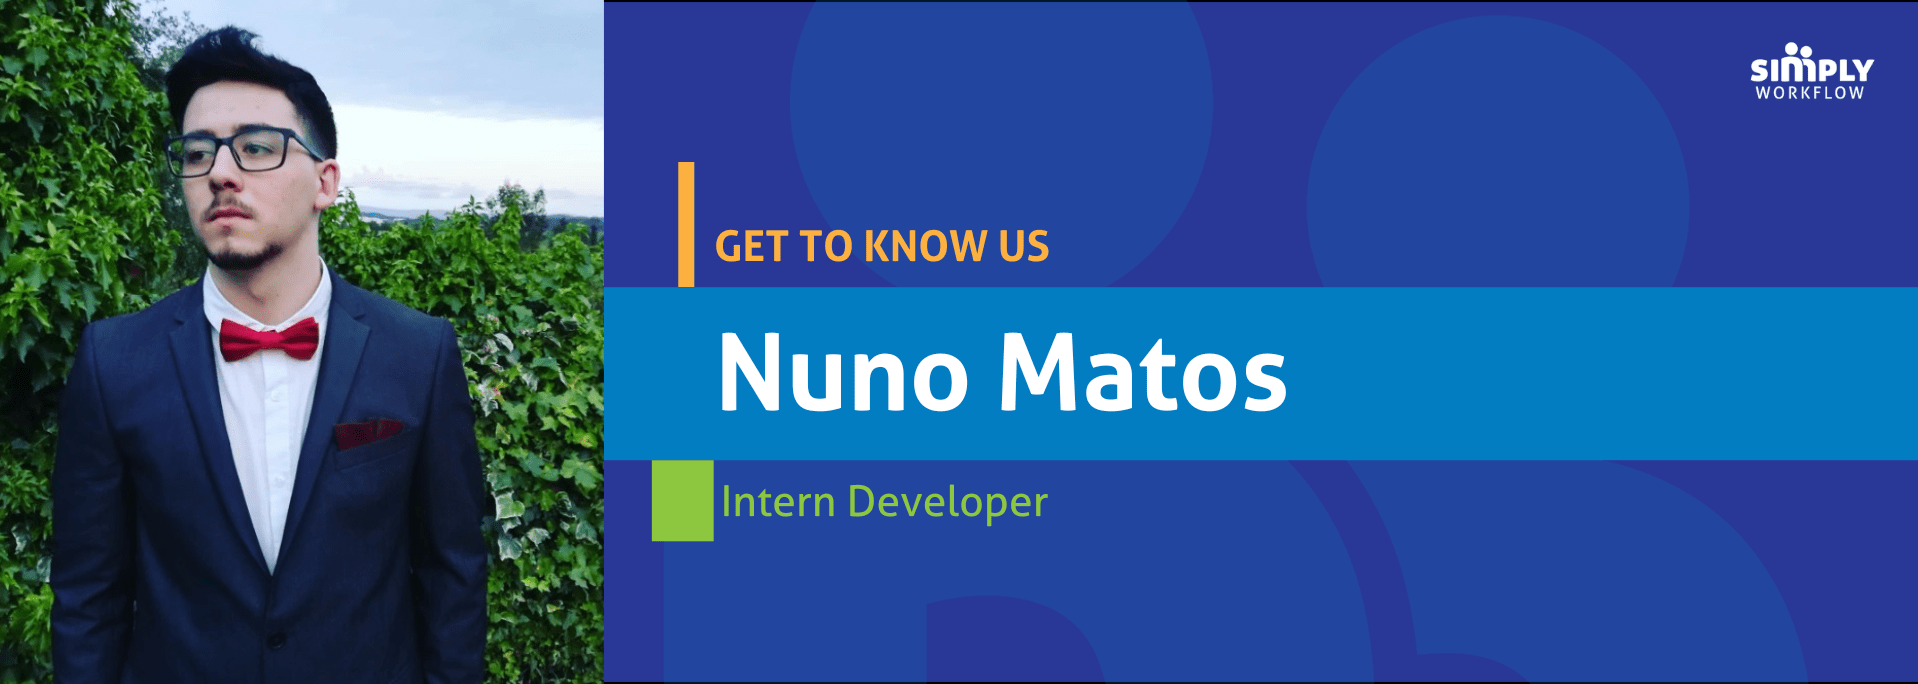 Nuno Matos- Simply Workflow Get to Know Us